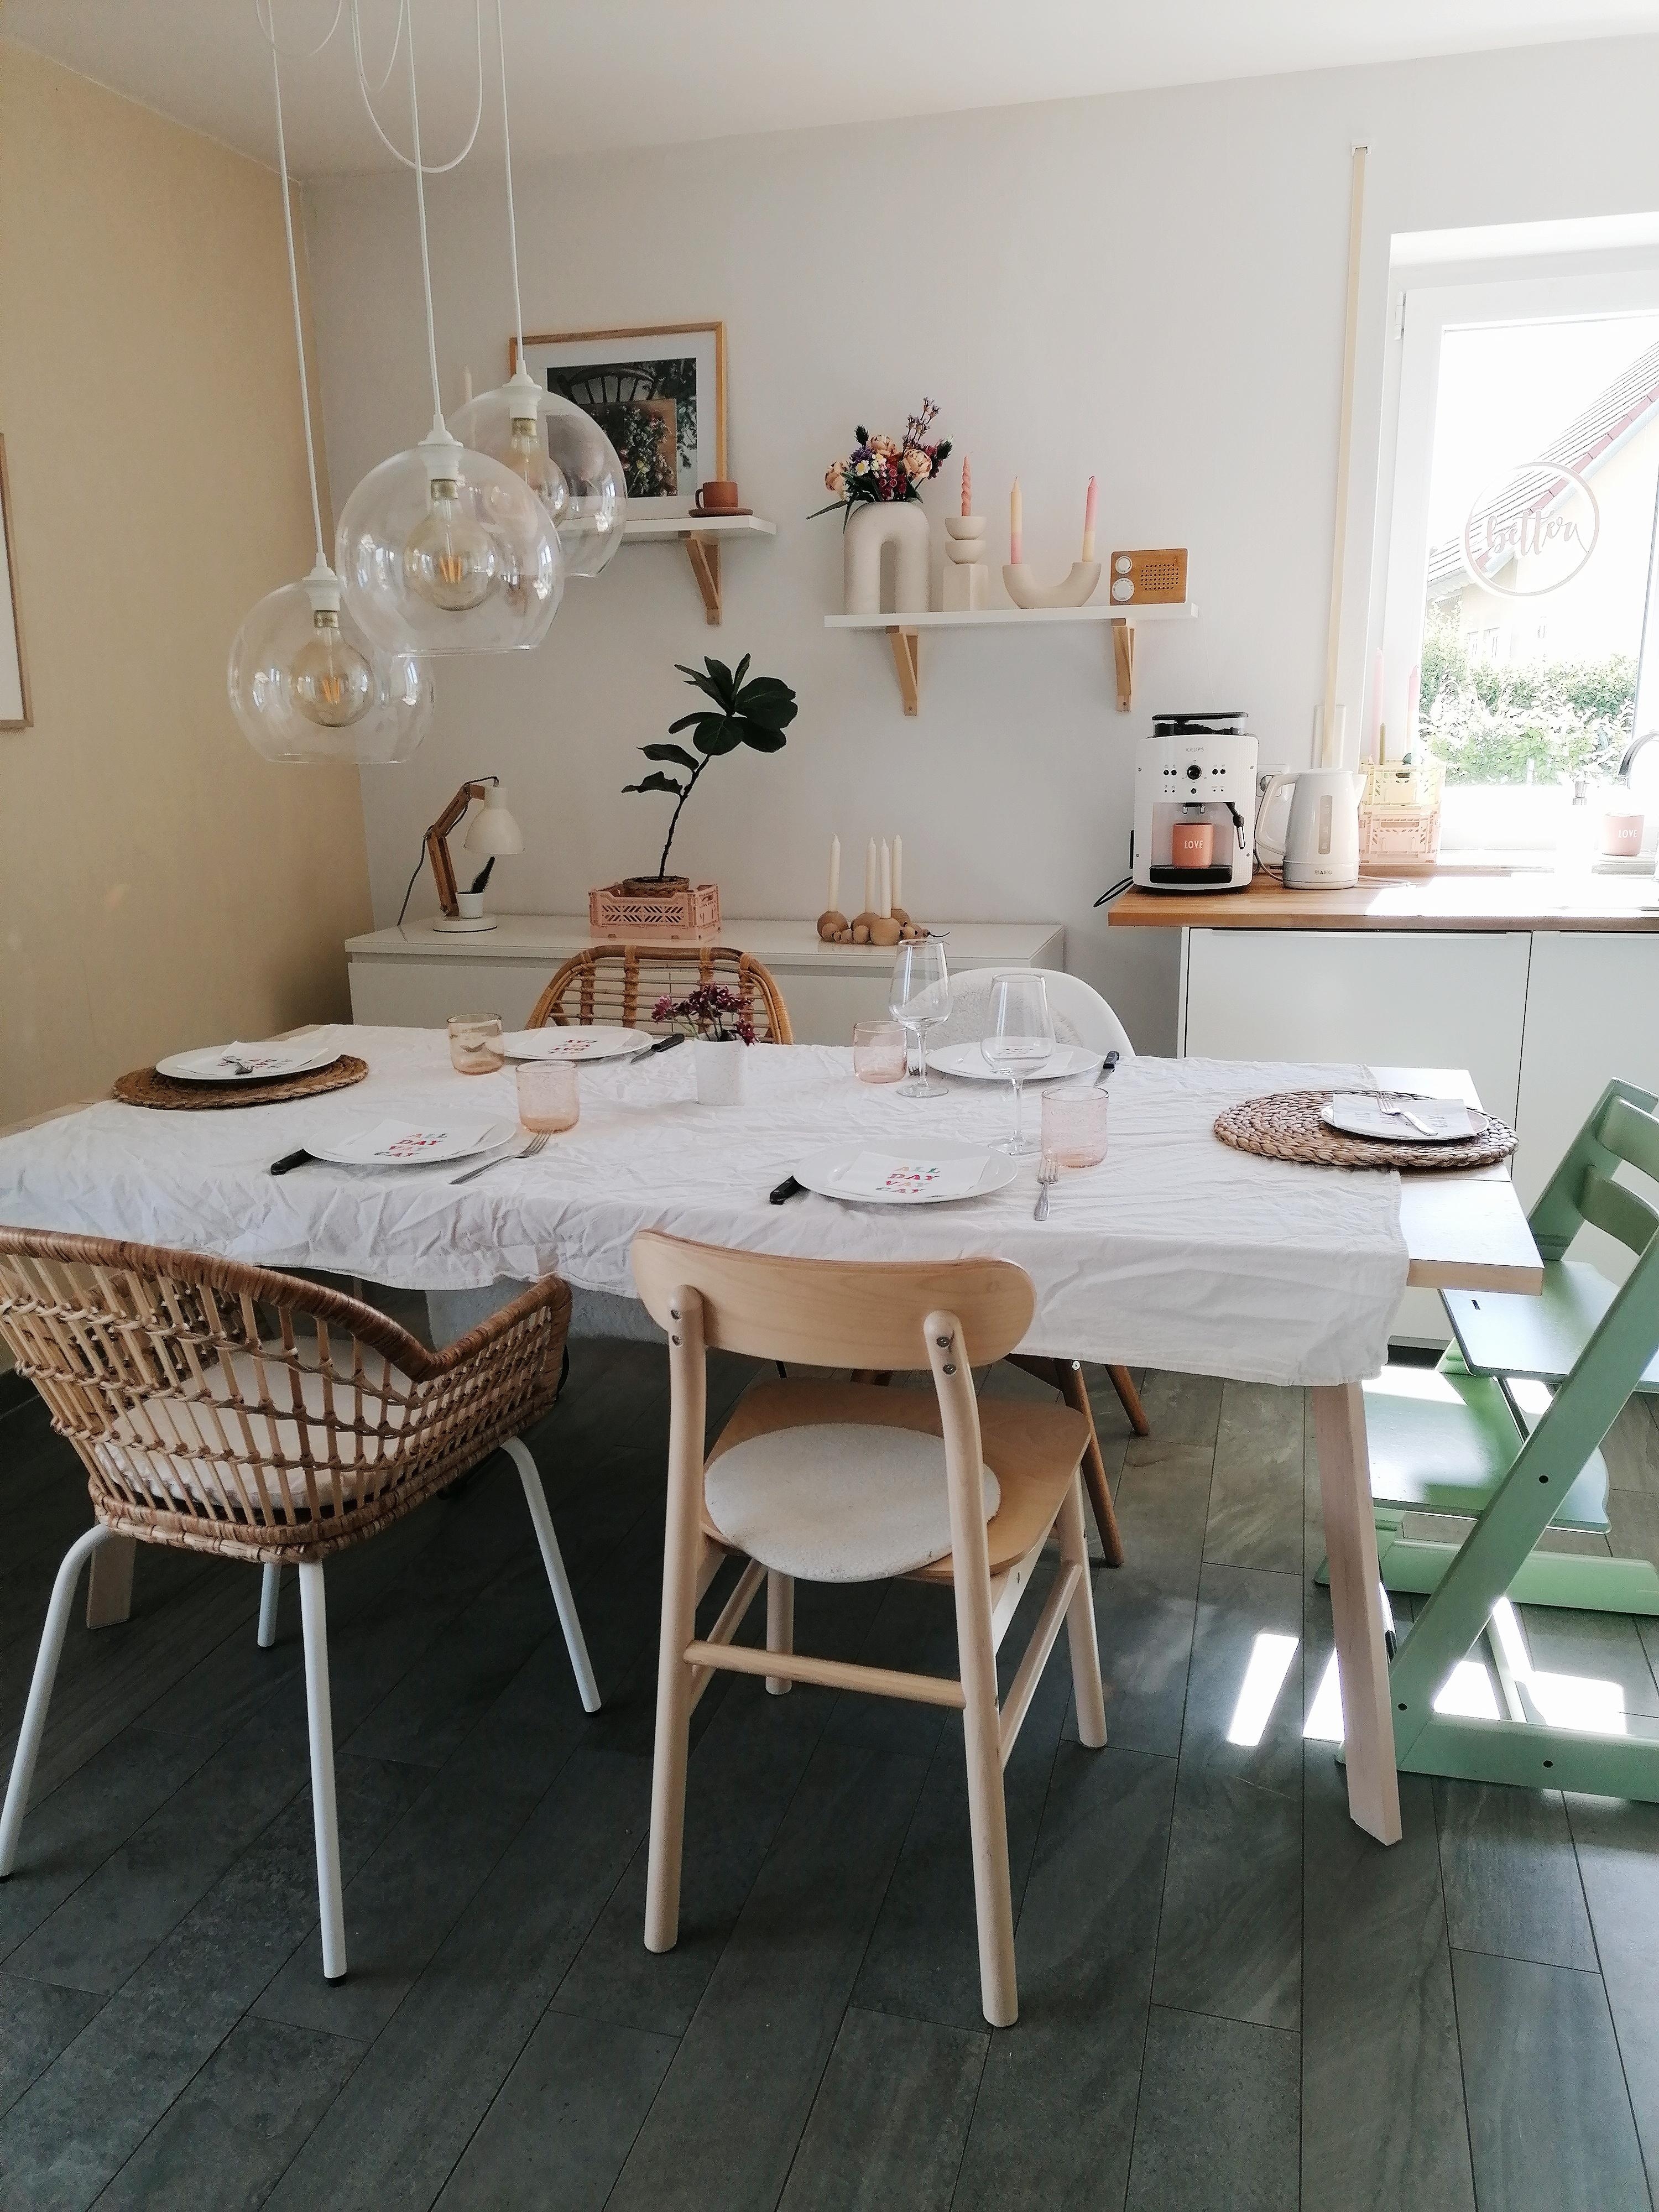 Come dine with me.
#esstisch#stuhlmix#kitchen#tisch